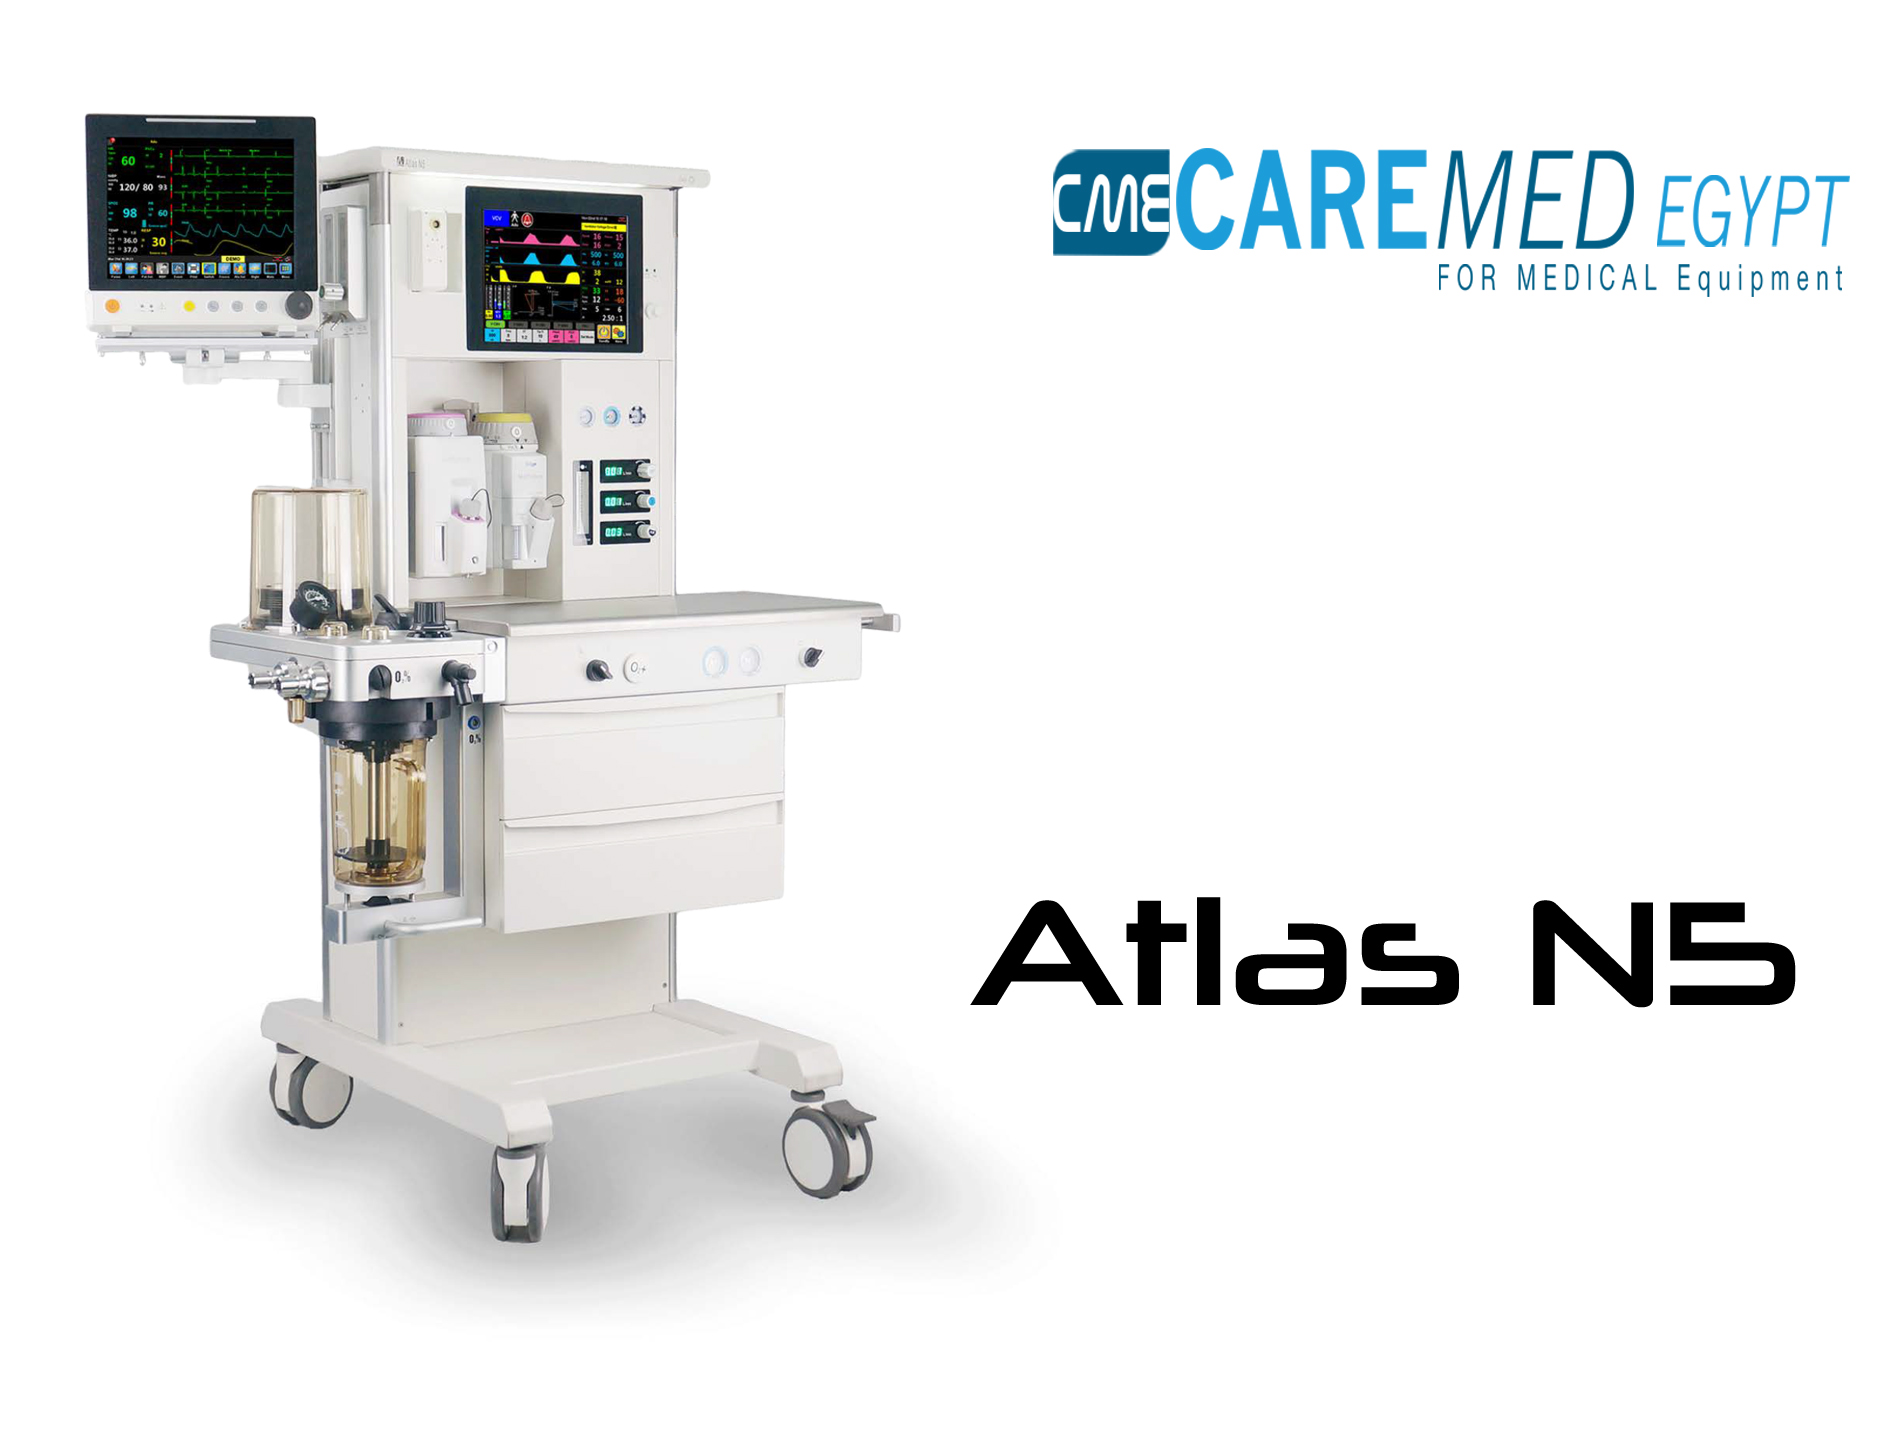 Atlas N5